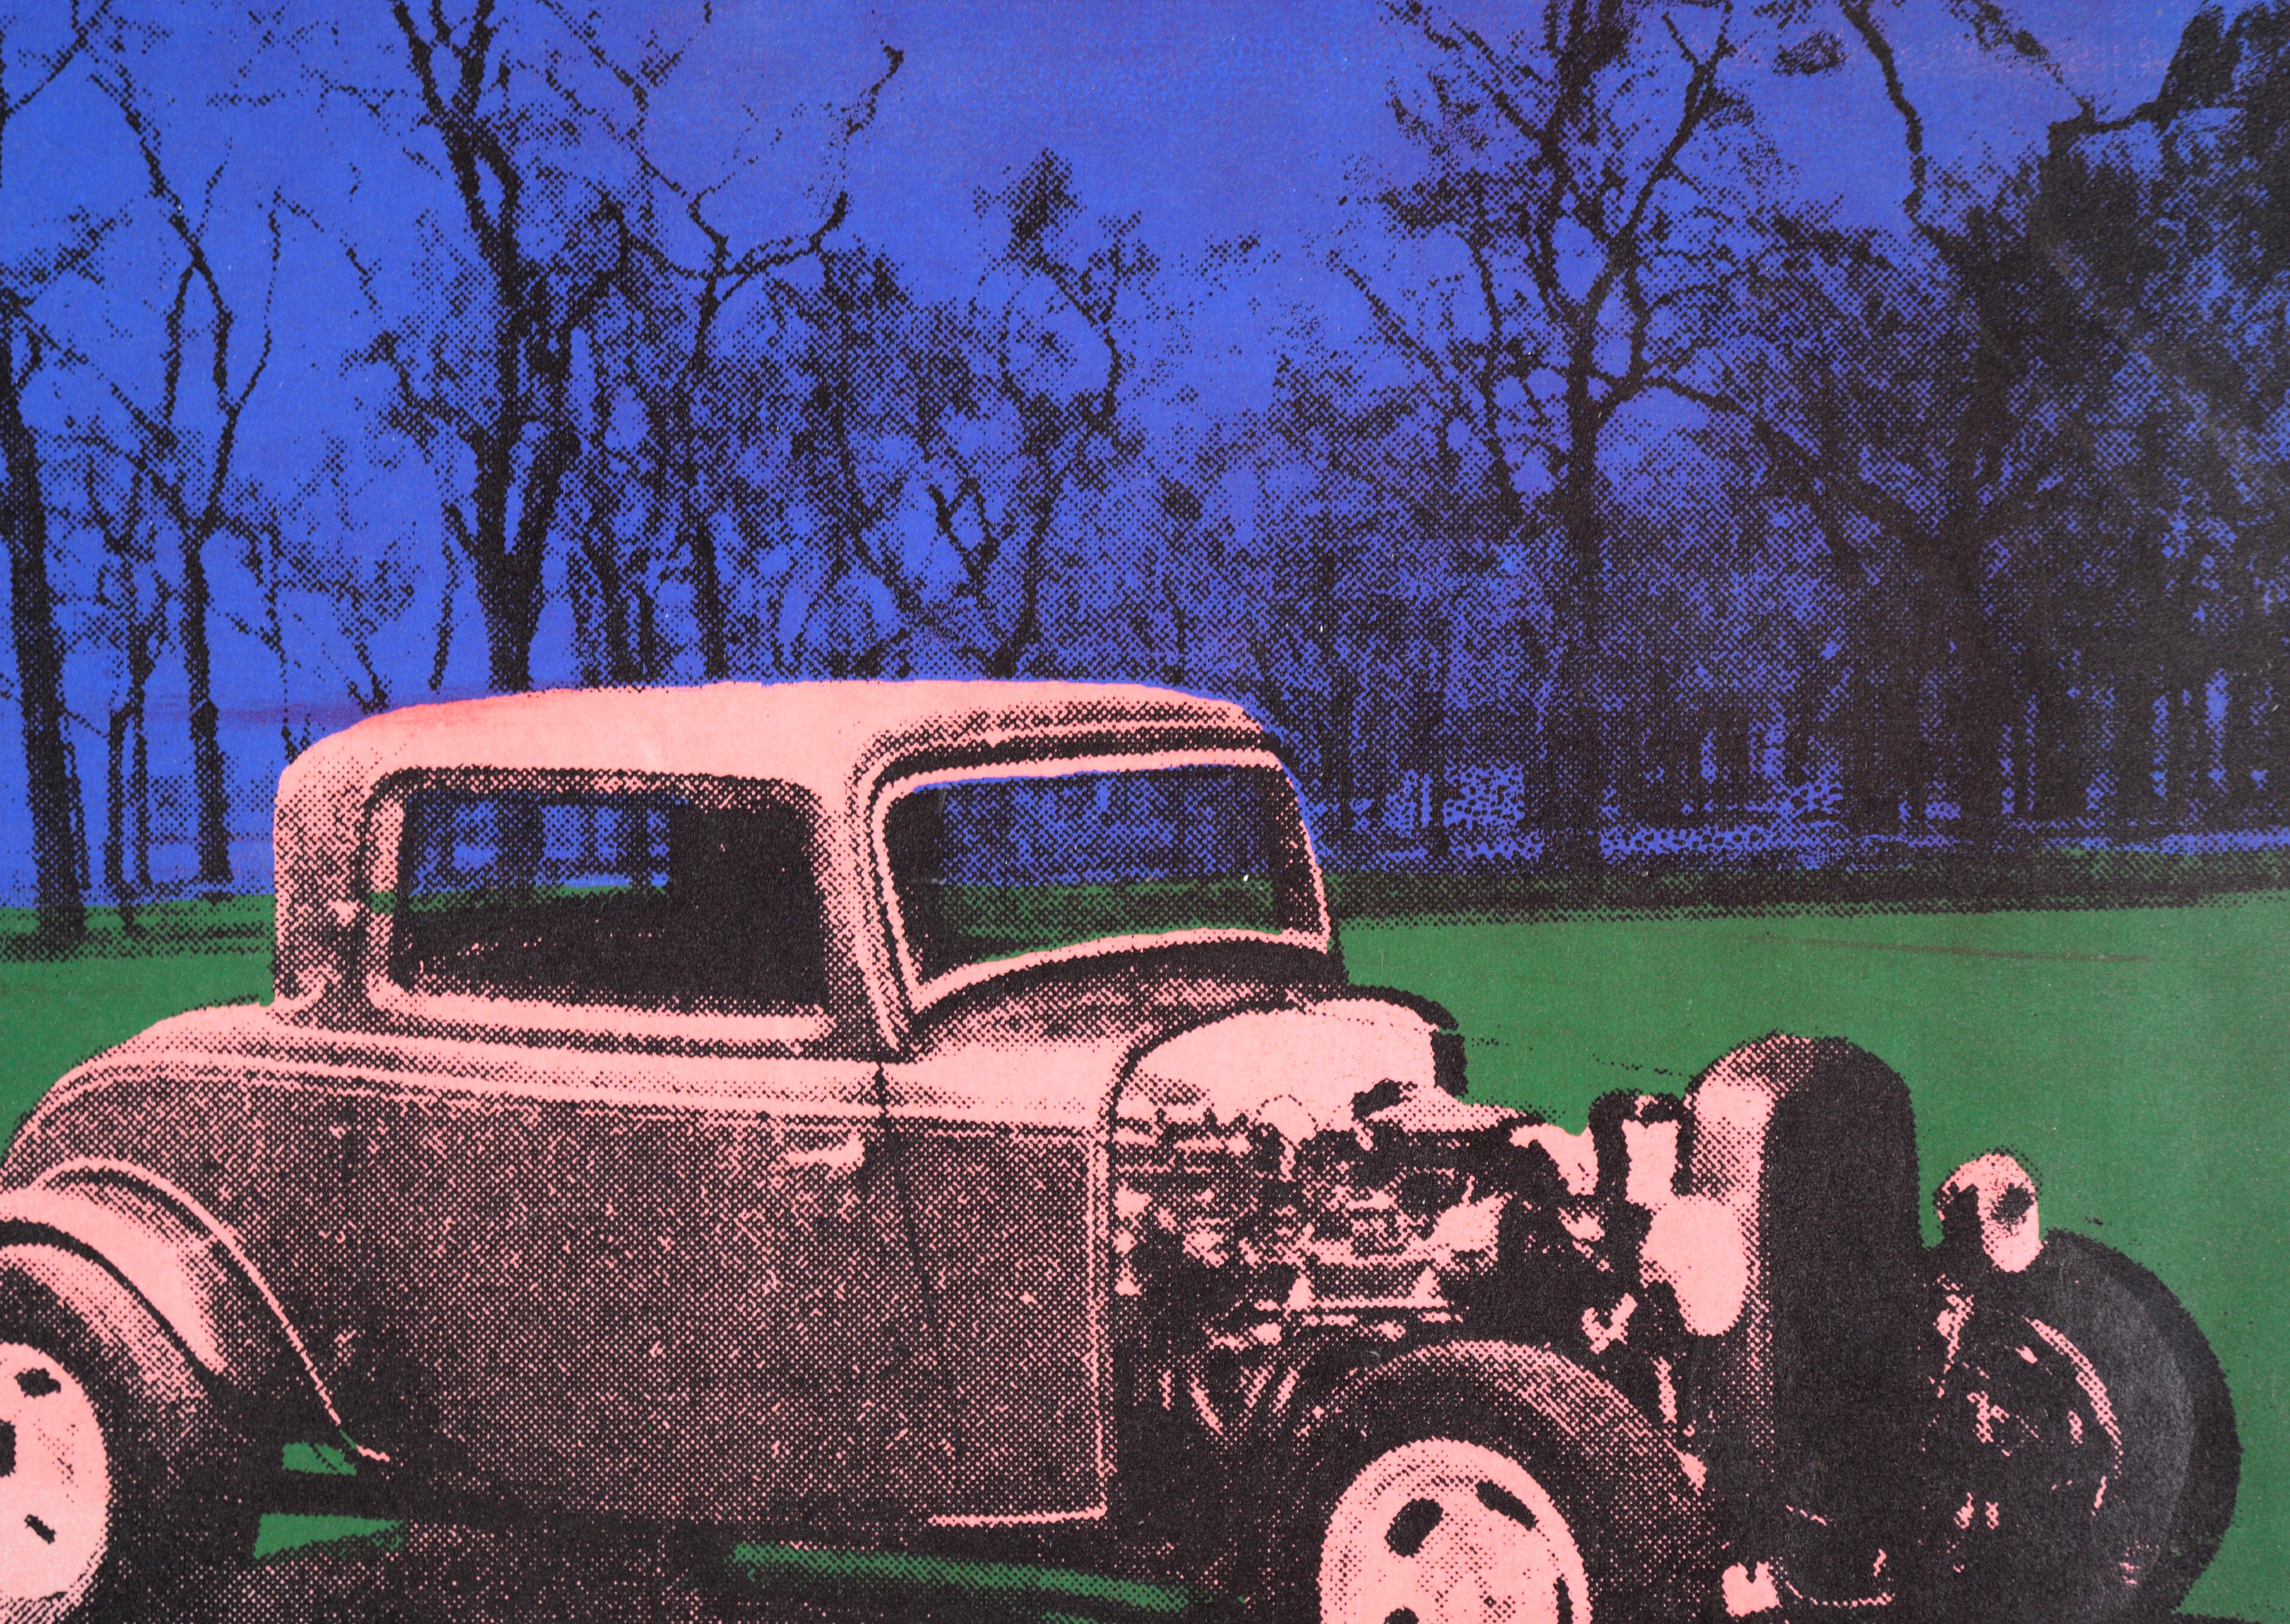 Sérigraphie multicouche hautement saturée de Steve J. Pon (20e siècle). Un roadster des années 1930 est garé sur l'herbe, avec des arbres en toile de fond. La voiture est rendue en rose avec des points noirs en demi-ton. L'herbe et le ciel sont